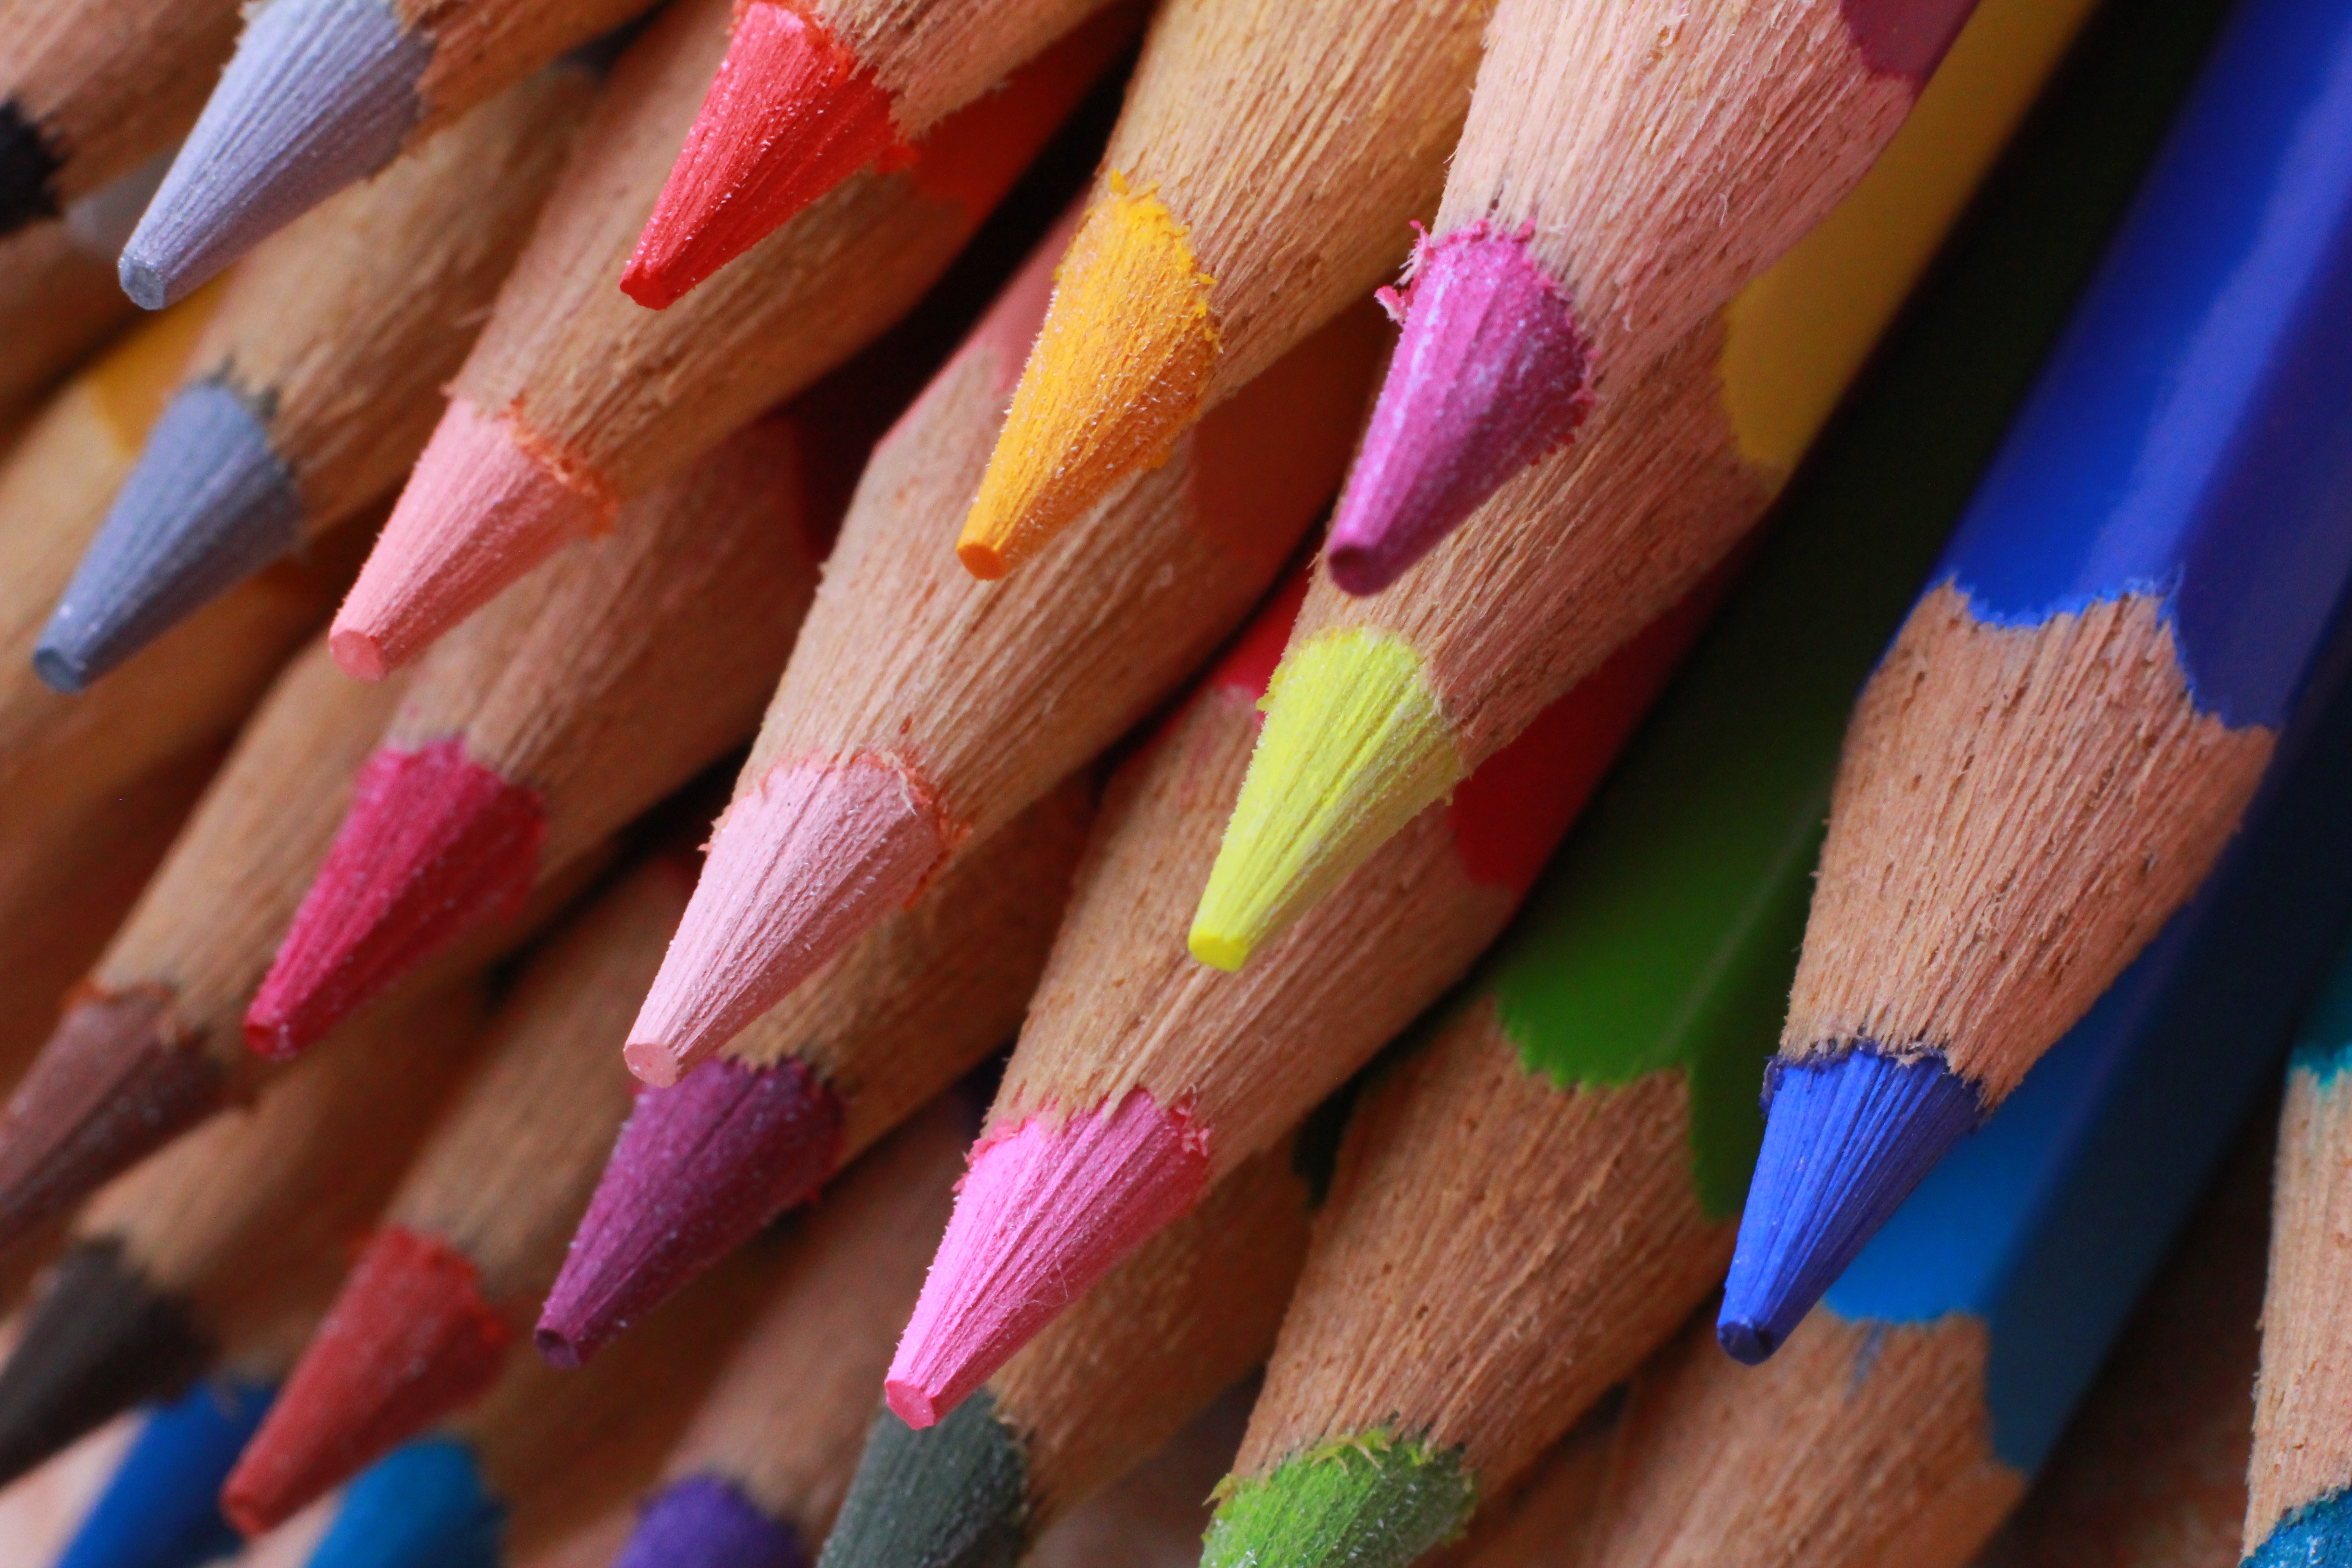 miscellanea, miscellaneous, multicolored, motley, colored pencils, spearhead, prick, imprisoned, colour pencils, sharpened